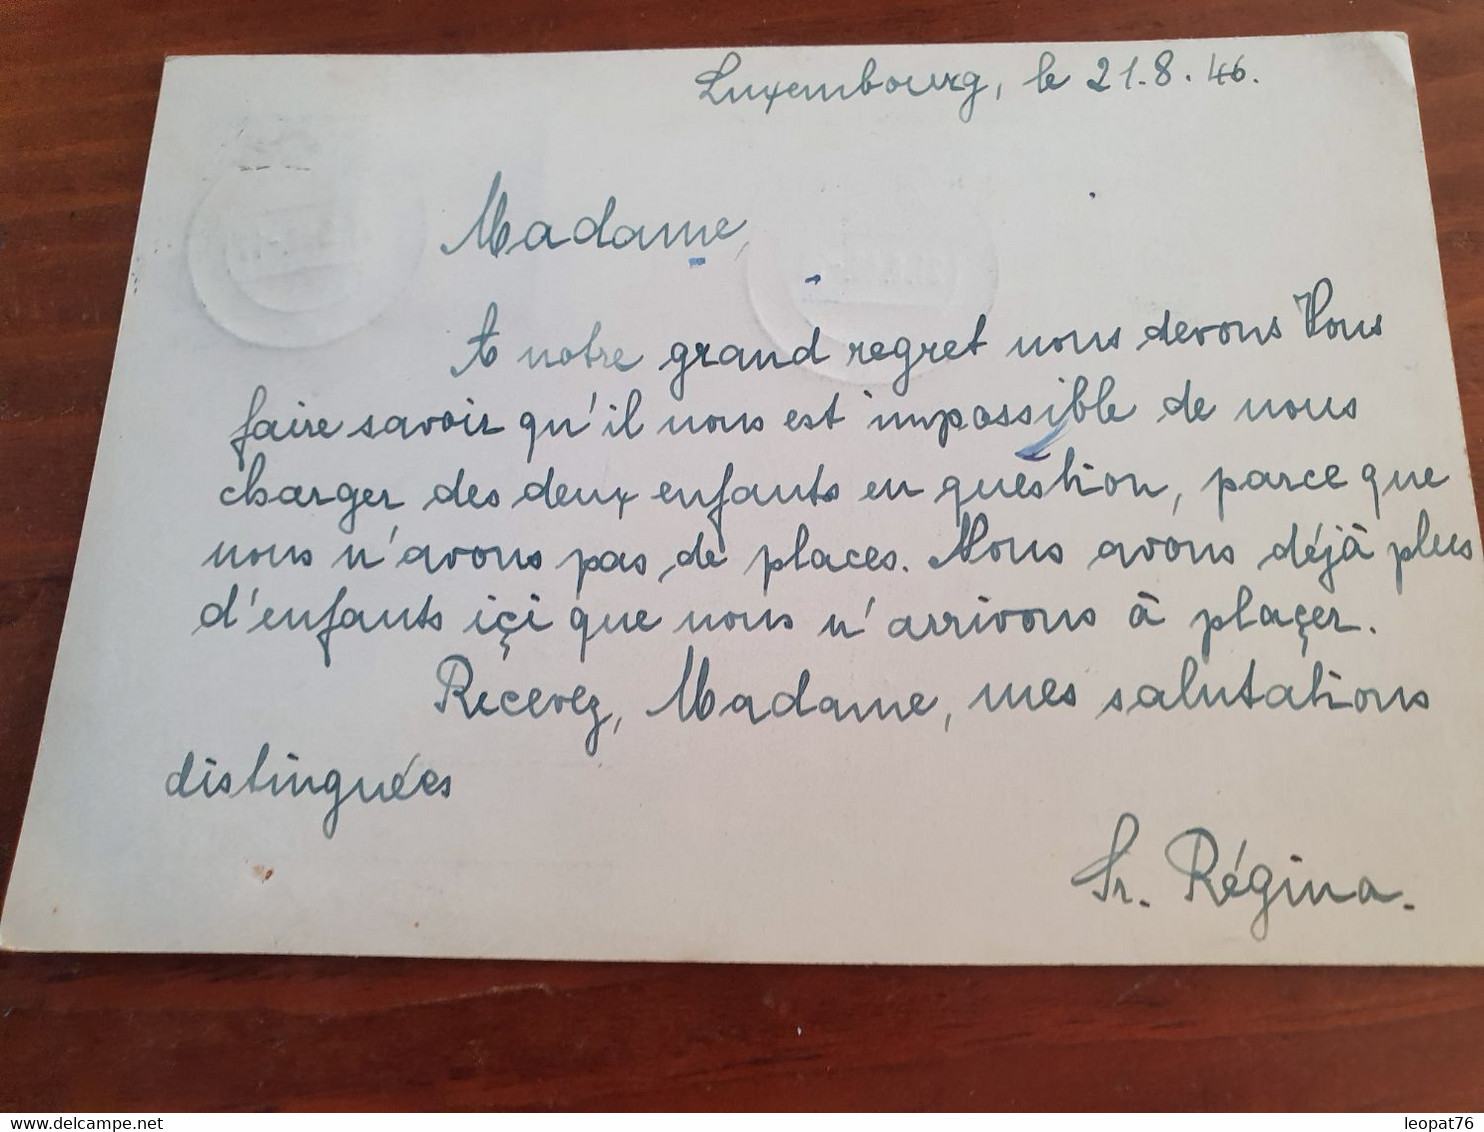 Luxembourg - Entier Postal + Complément De Luxembourg Pour La France En 1946 - M 86 - Ganzsachen